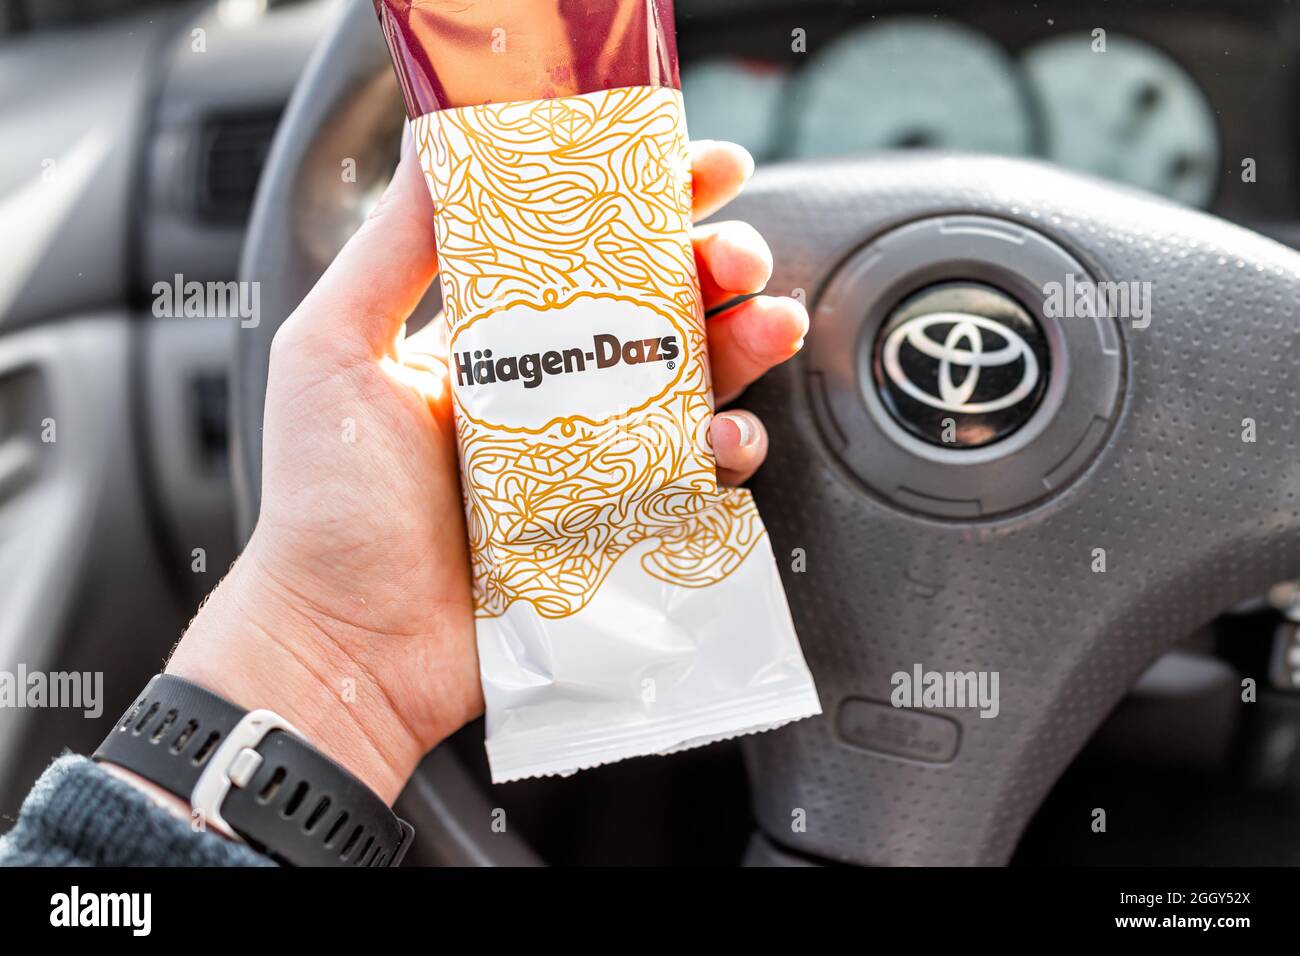 Greenville, Etats-Unis - 7 janvier 2021 : main de femme tenant une barre de glace au chocolat à la vanille achetée par Haagen-Dazs et signe avec le fond des voitures s. Banque D'Images